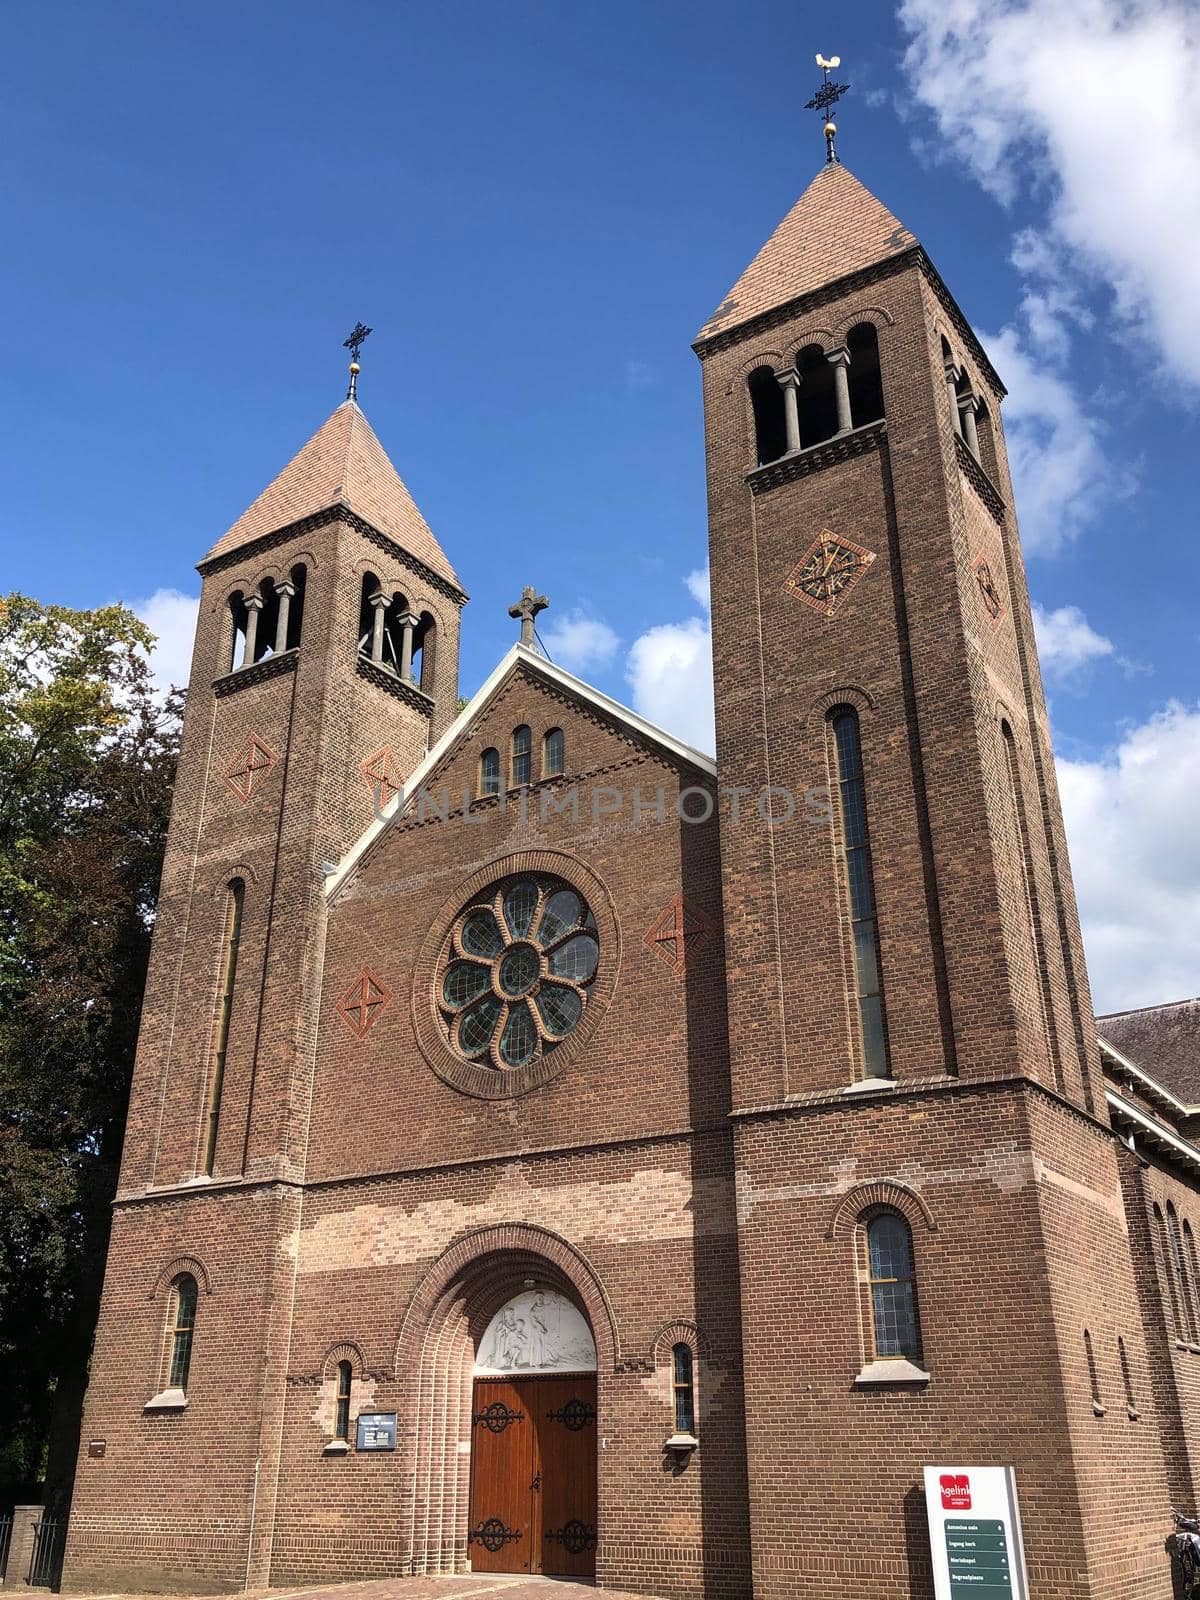 Antonius church in Ulft, Gelderland, The Netherlands